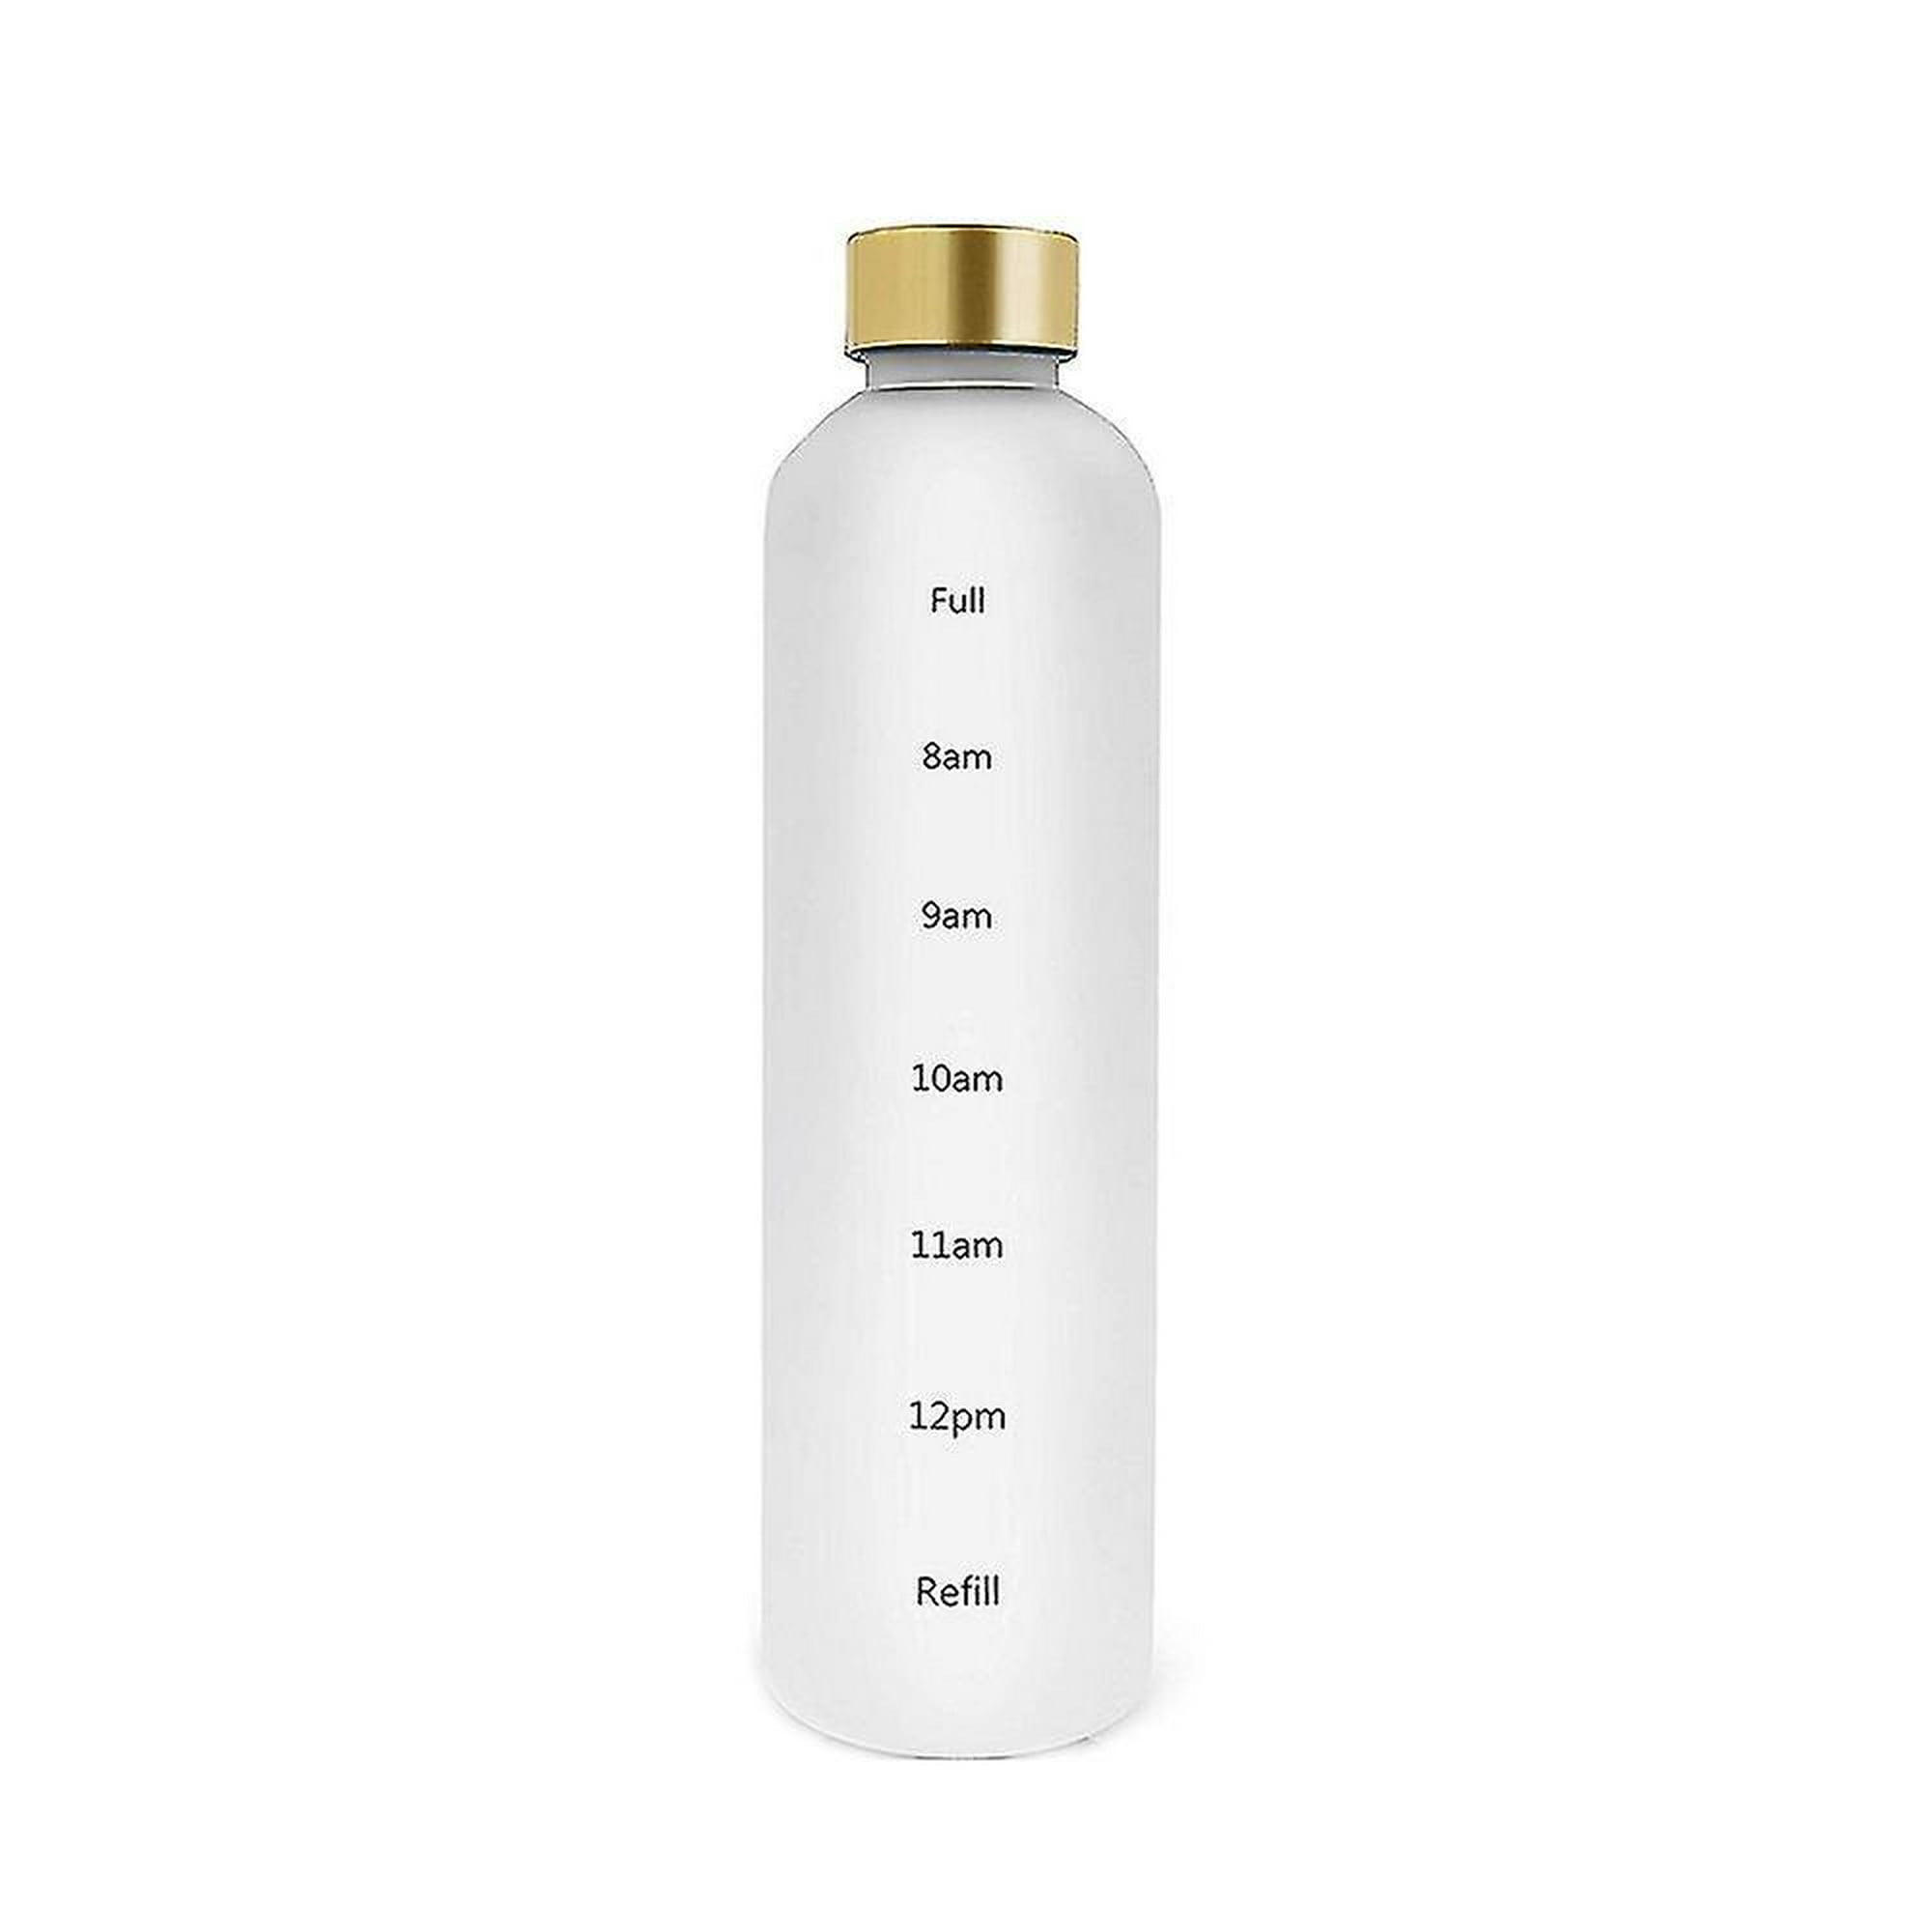 Botella de agua de 1l con marcador de tiempo, 32 oz, motivacional, reutilizable, para deportes al aire libre, viajes, a prueba de fugas, sin bpa, plástico esmerilado